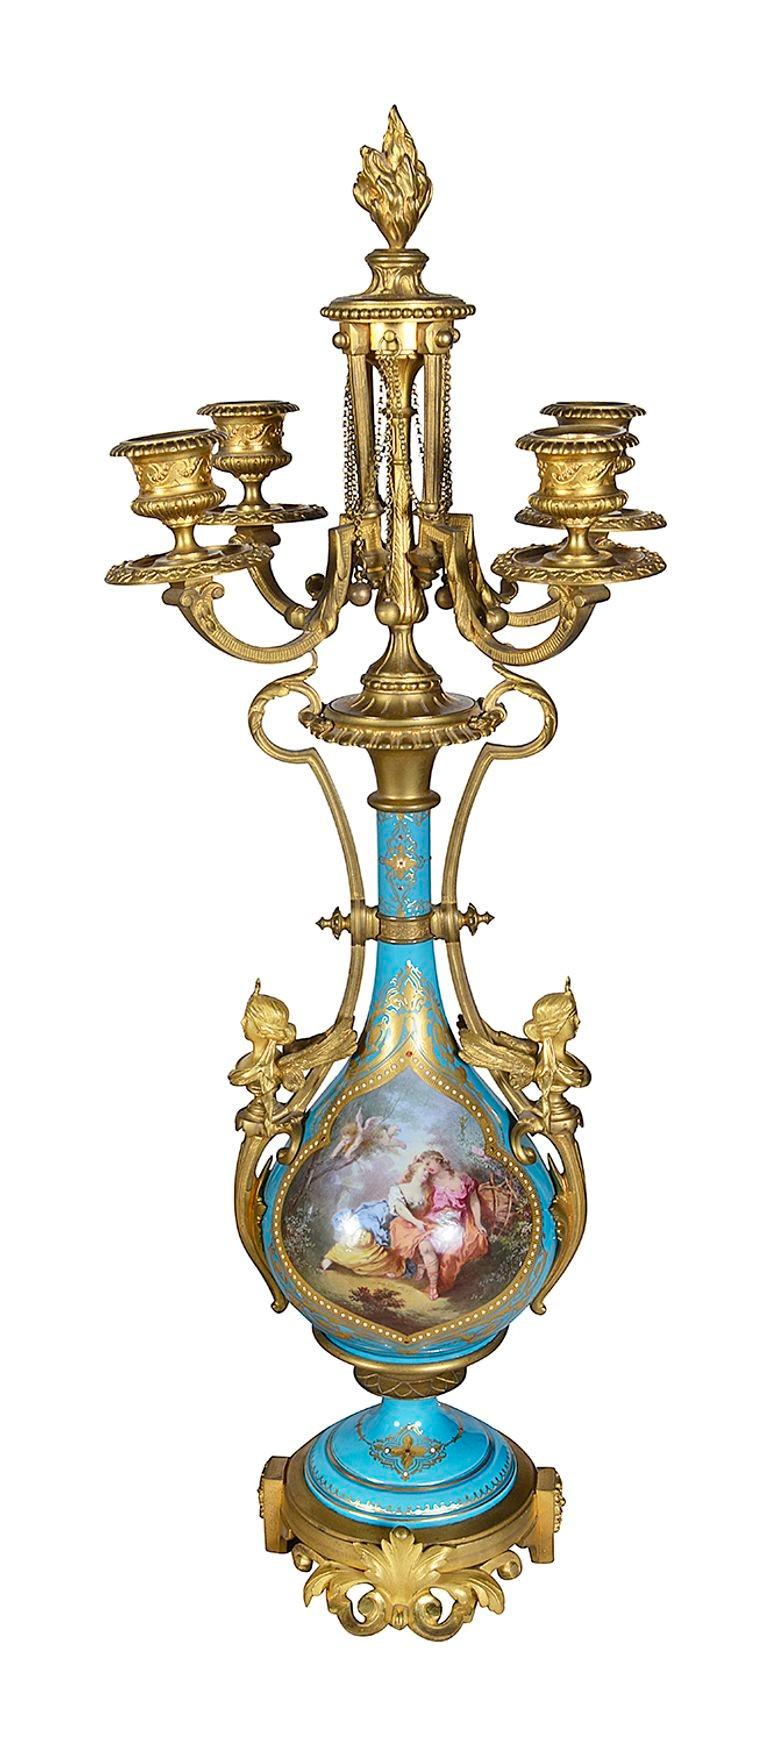 Très belle garniture de pendule de style Louis XVI Sèvres de très bonne qualité, datant du XIXe siècle. Des vierges allongées avec des guirlandes de fleurs soutiennent une urne au-dessus du cadran de l'horloge. Porcelaine turquoise à décor perlé et